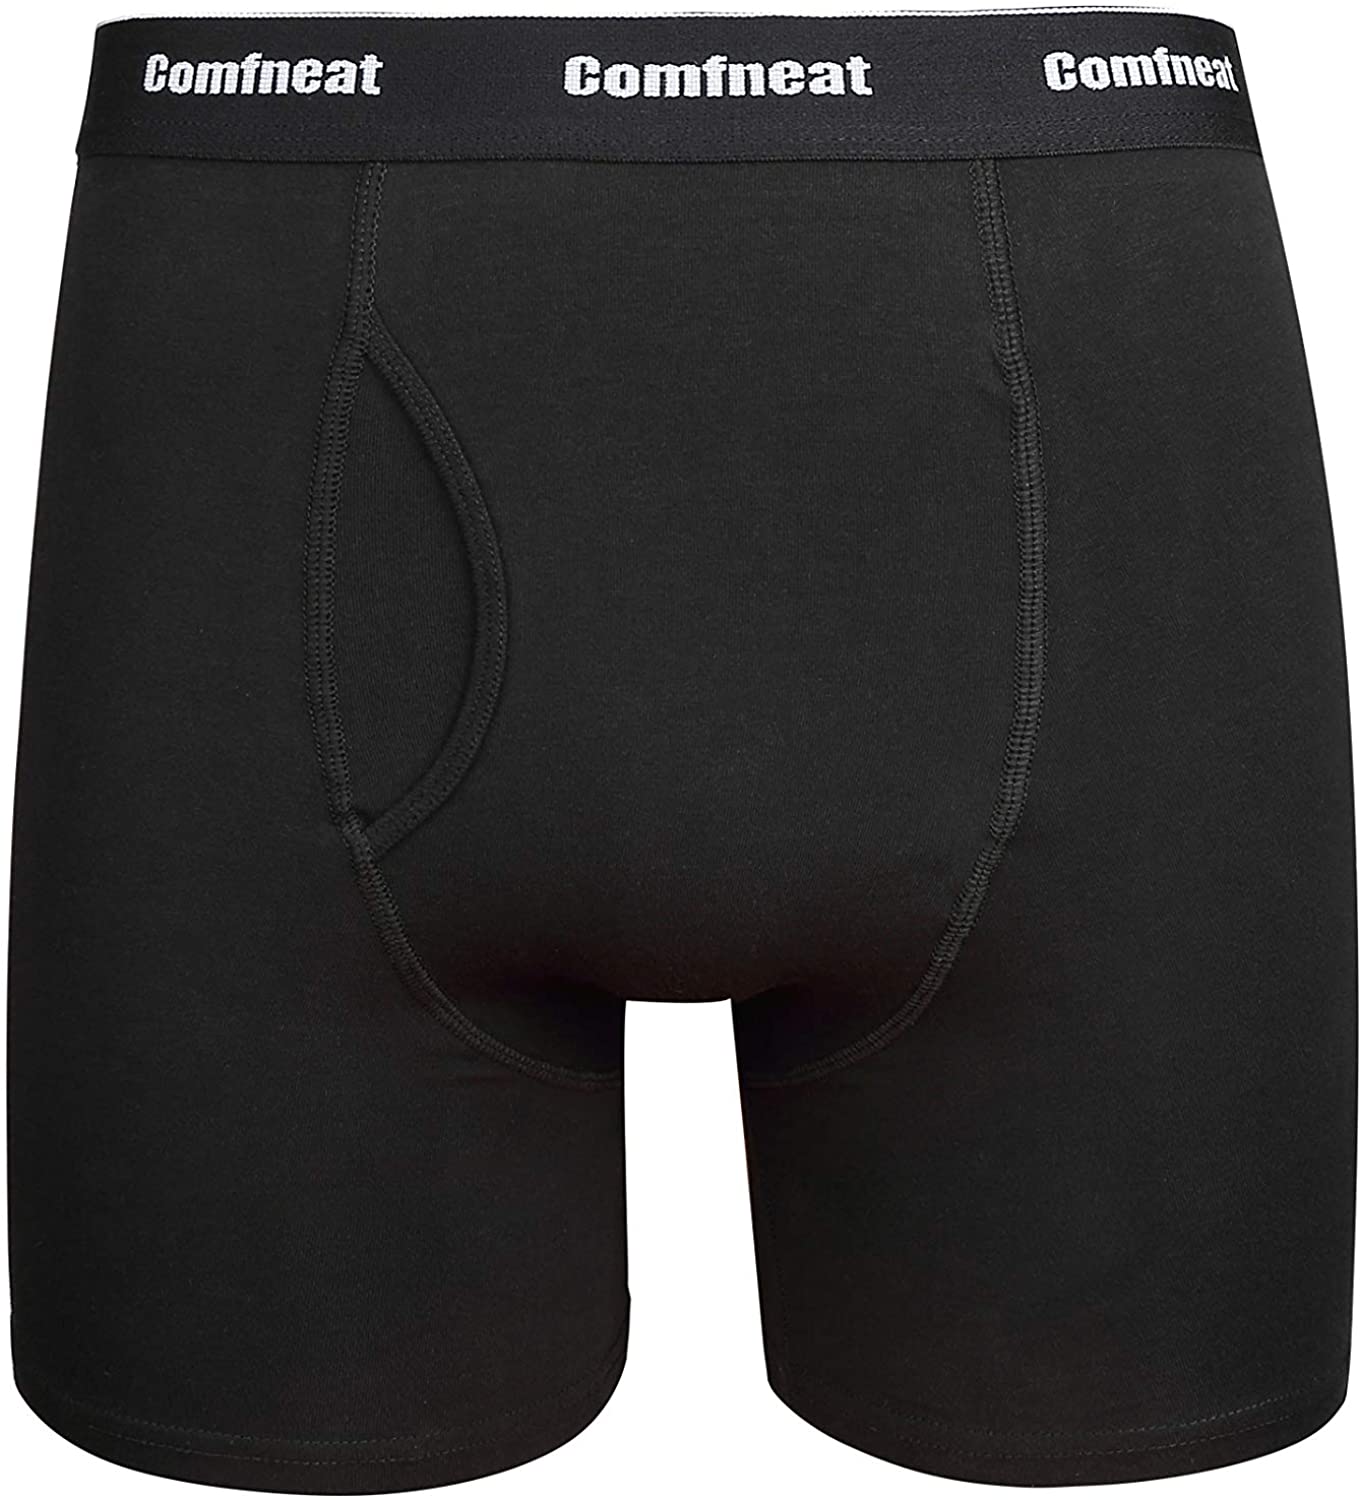 Comfneat Mens Boxer Briefs 6-Pack S-XXL Tagless Underwear Soft Cotton Spandex 